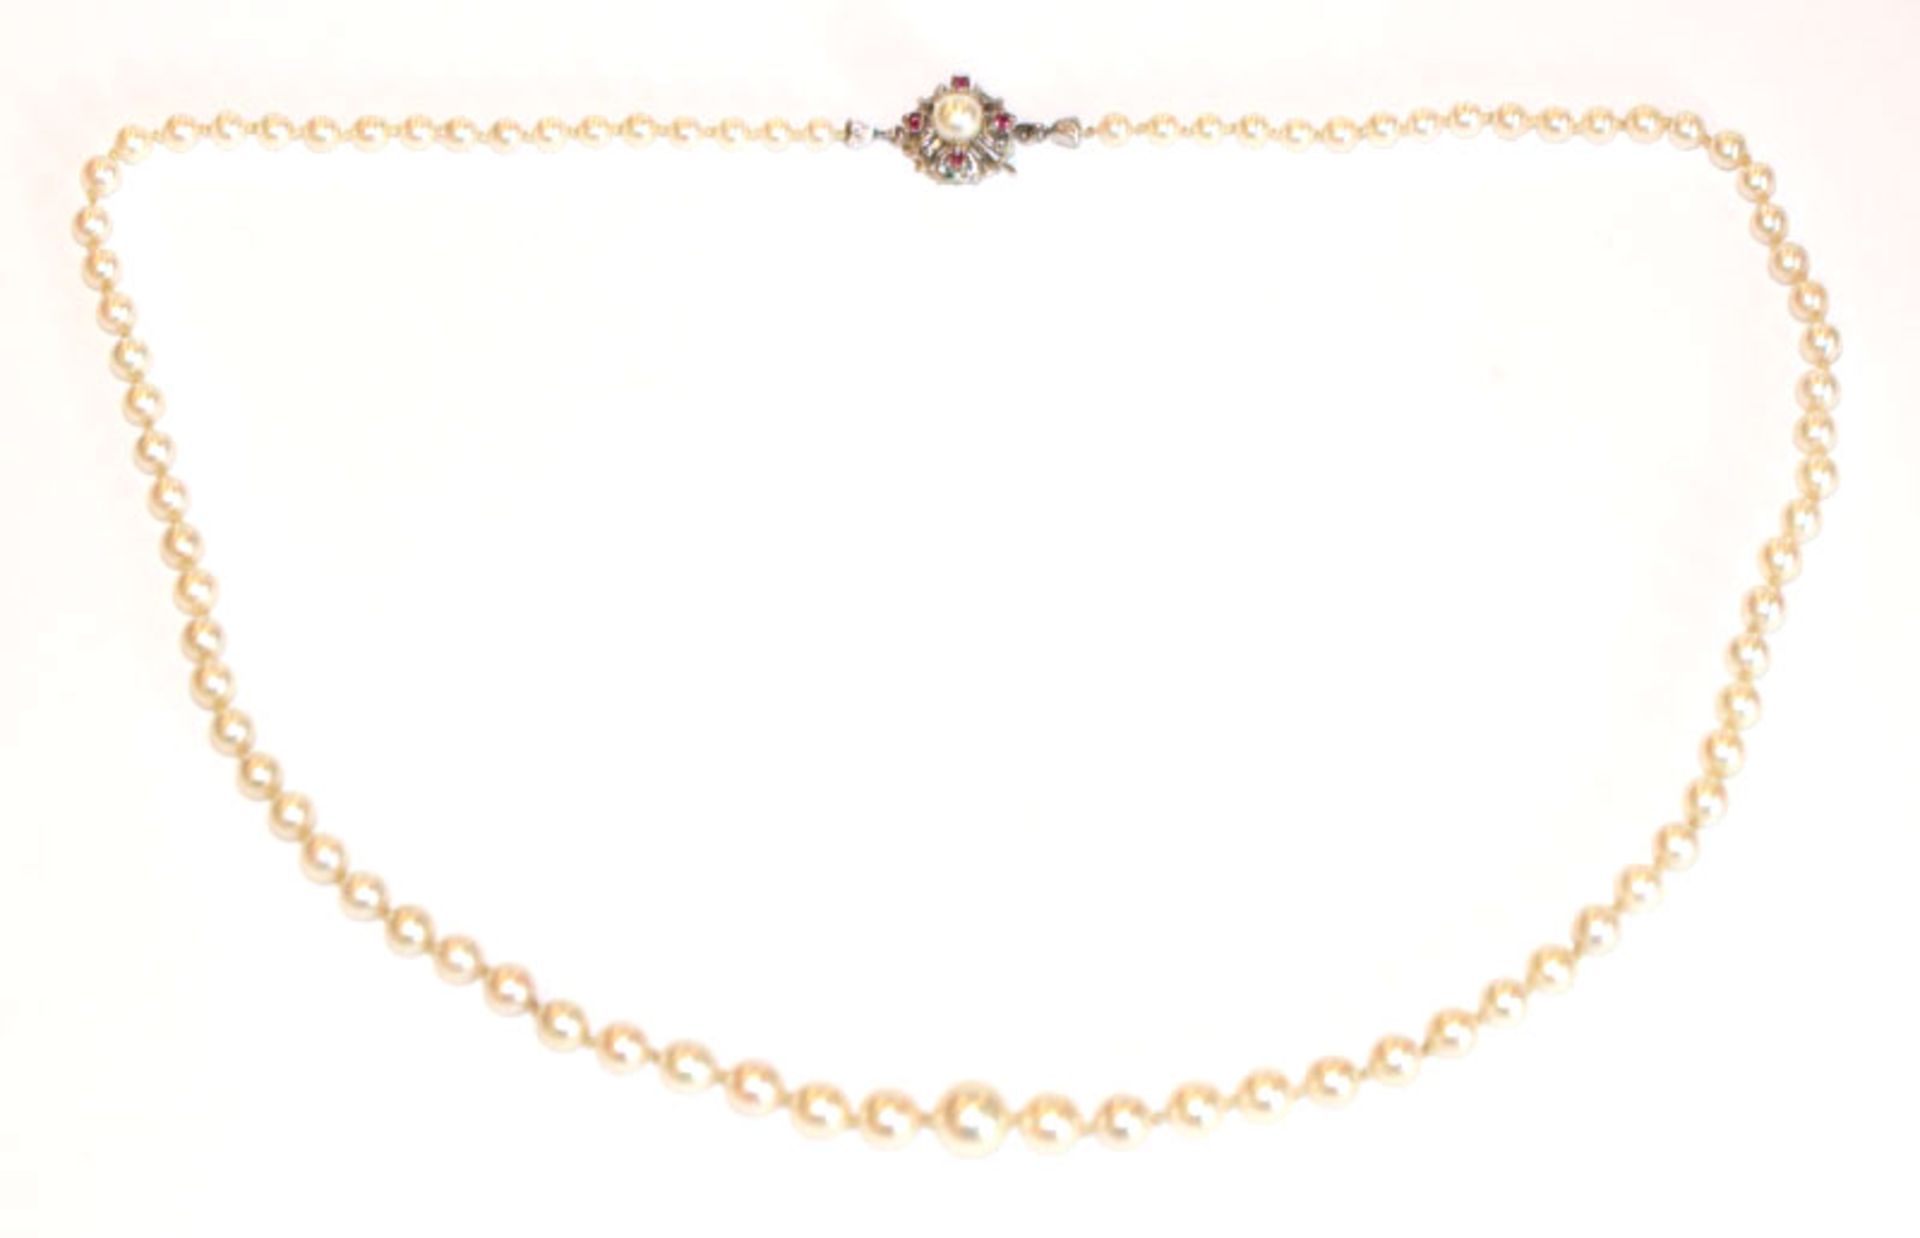 Perlenkette in Verlaufform mit 8 k Weißgold Schließe, besetzt mit Perle und 4 Rubinen, L 52 cm